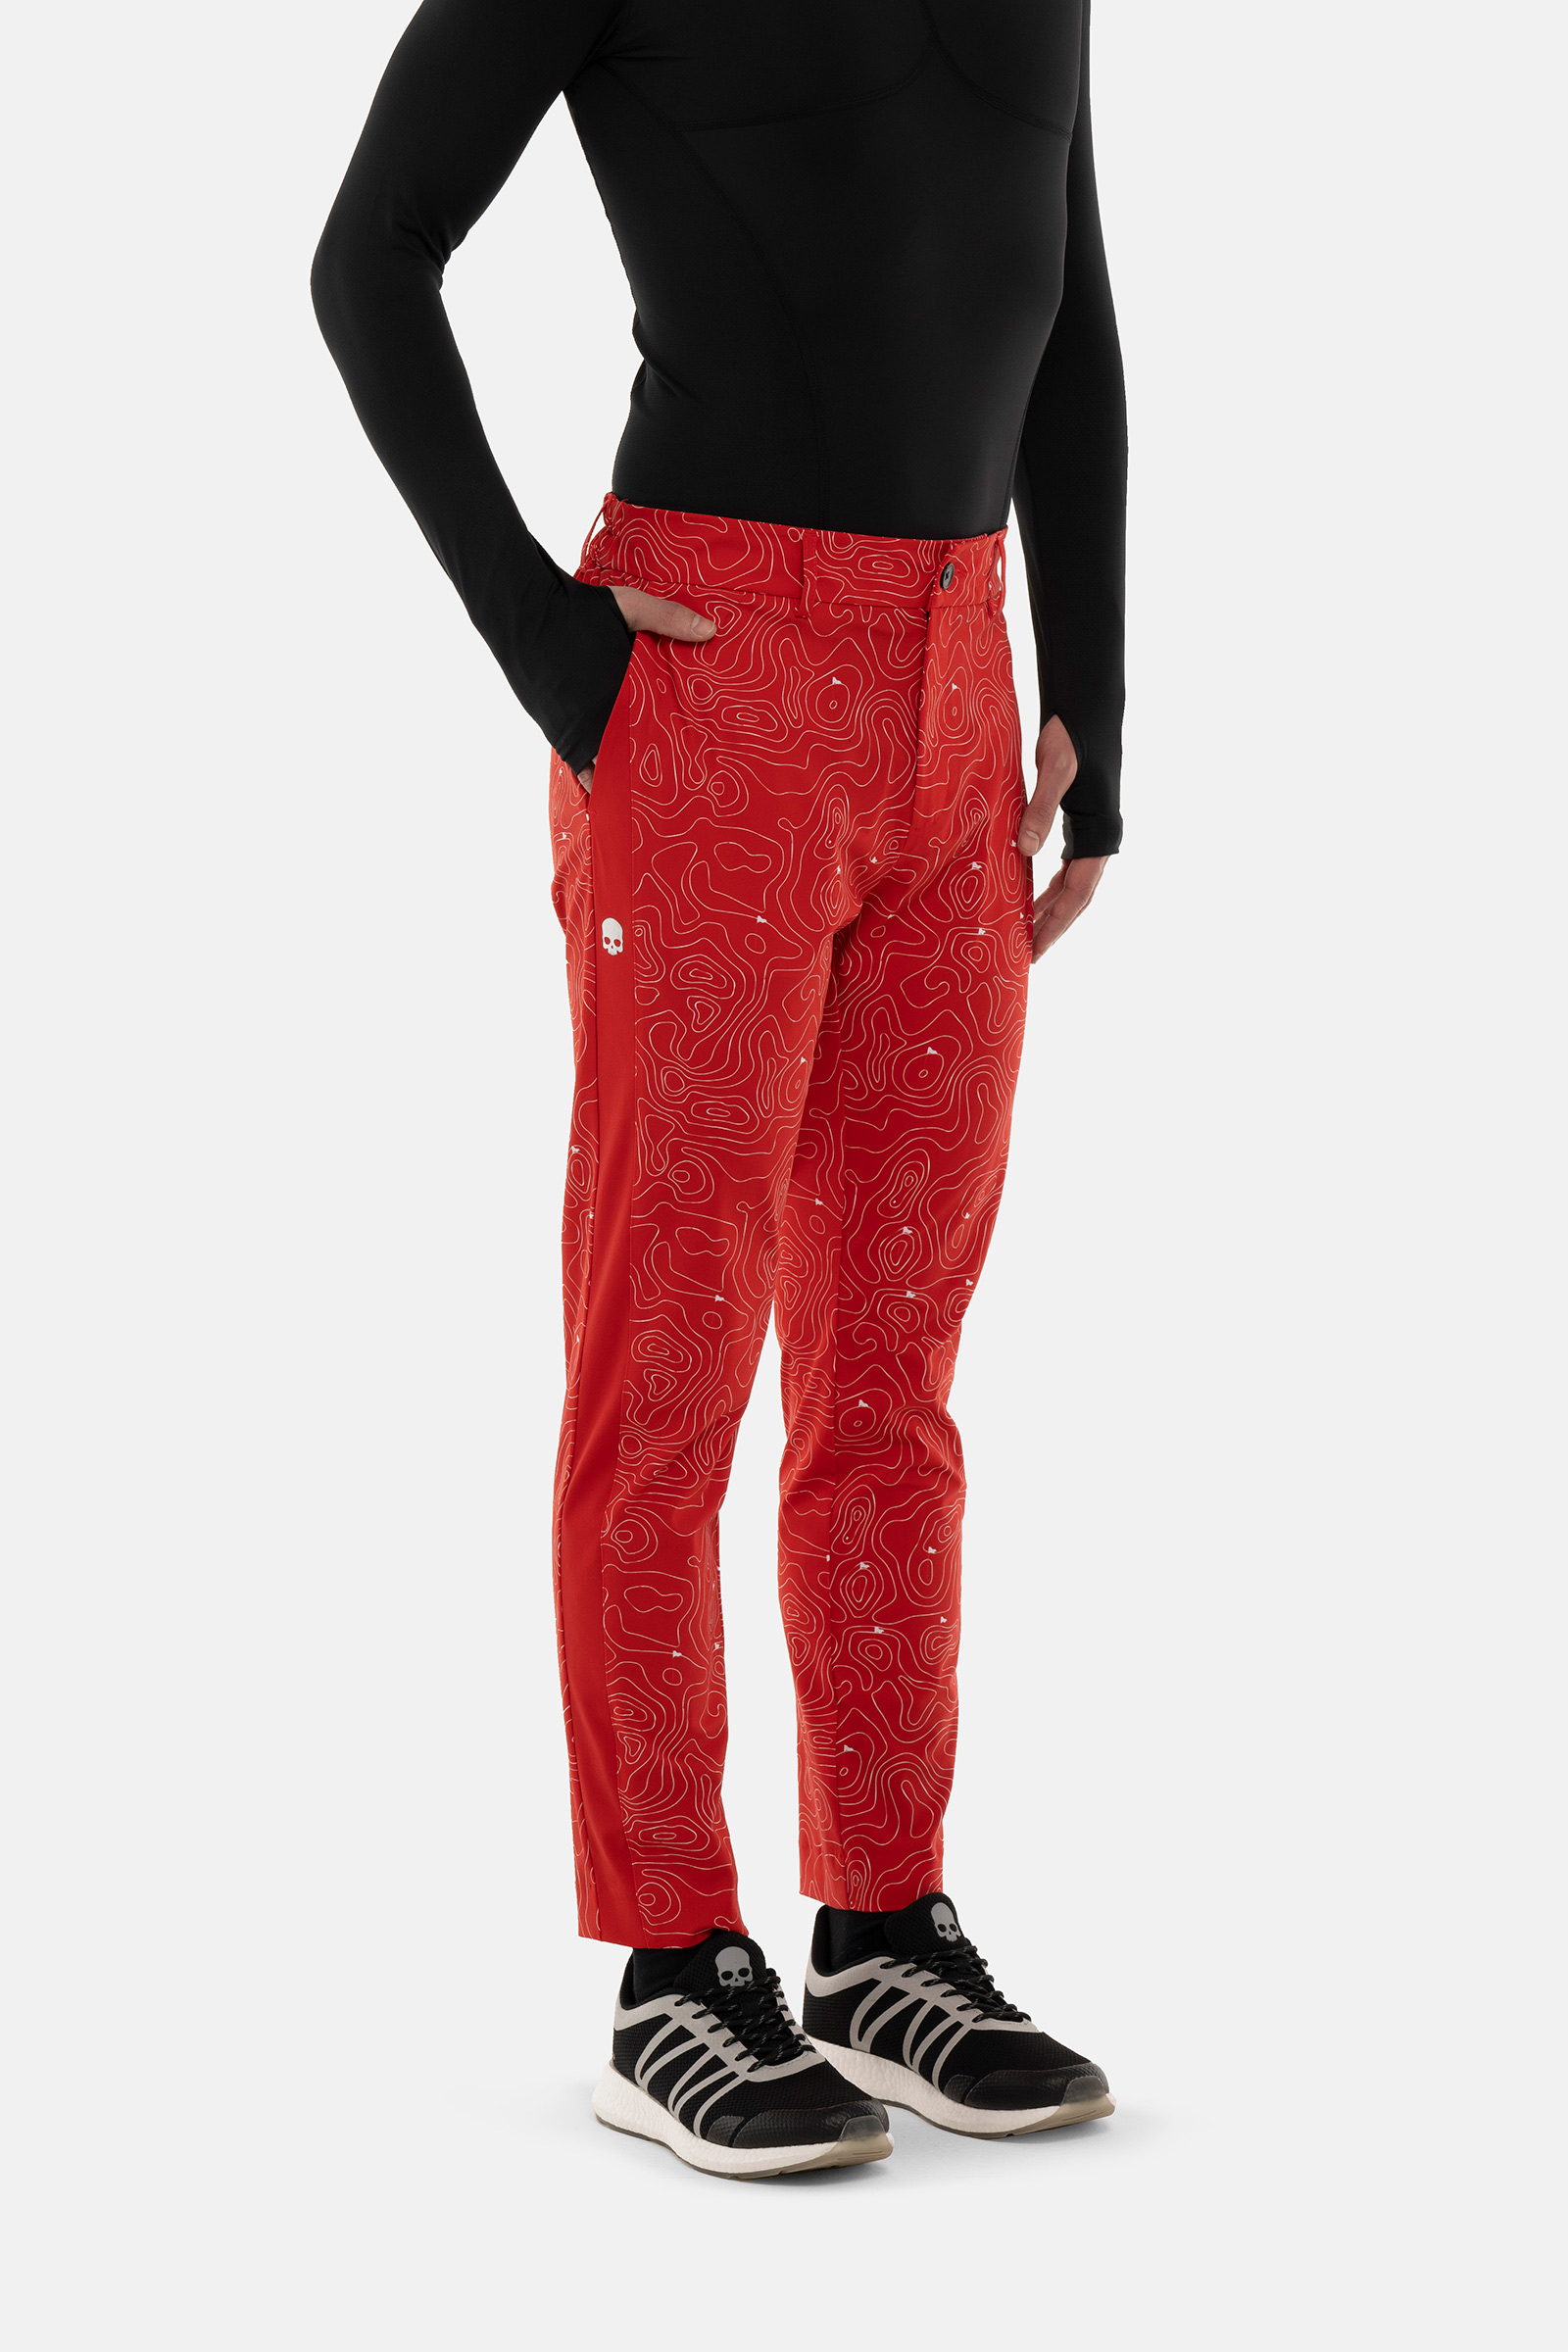 GOLF FIELDS TECH PANTS - RED - Hydrogen - Luxury Sportwear